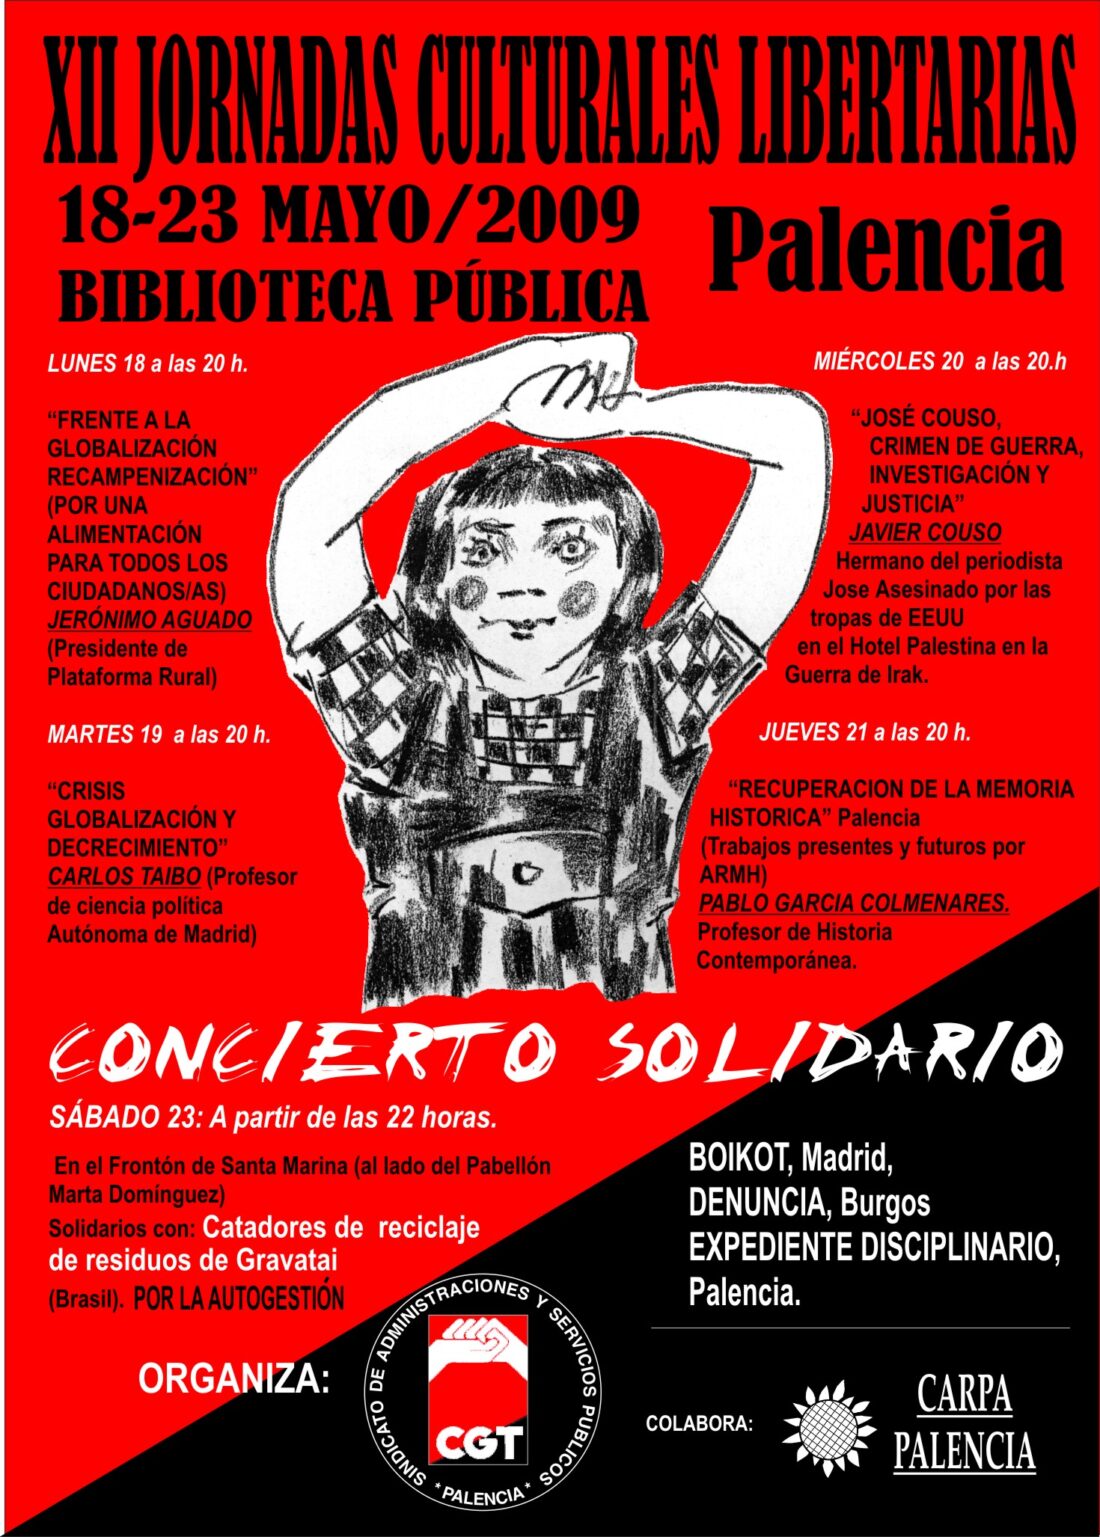 XII Jornadas Culturales Libertarias de Palencia